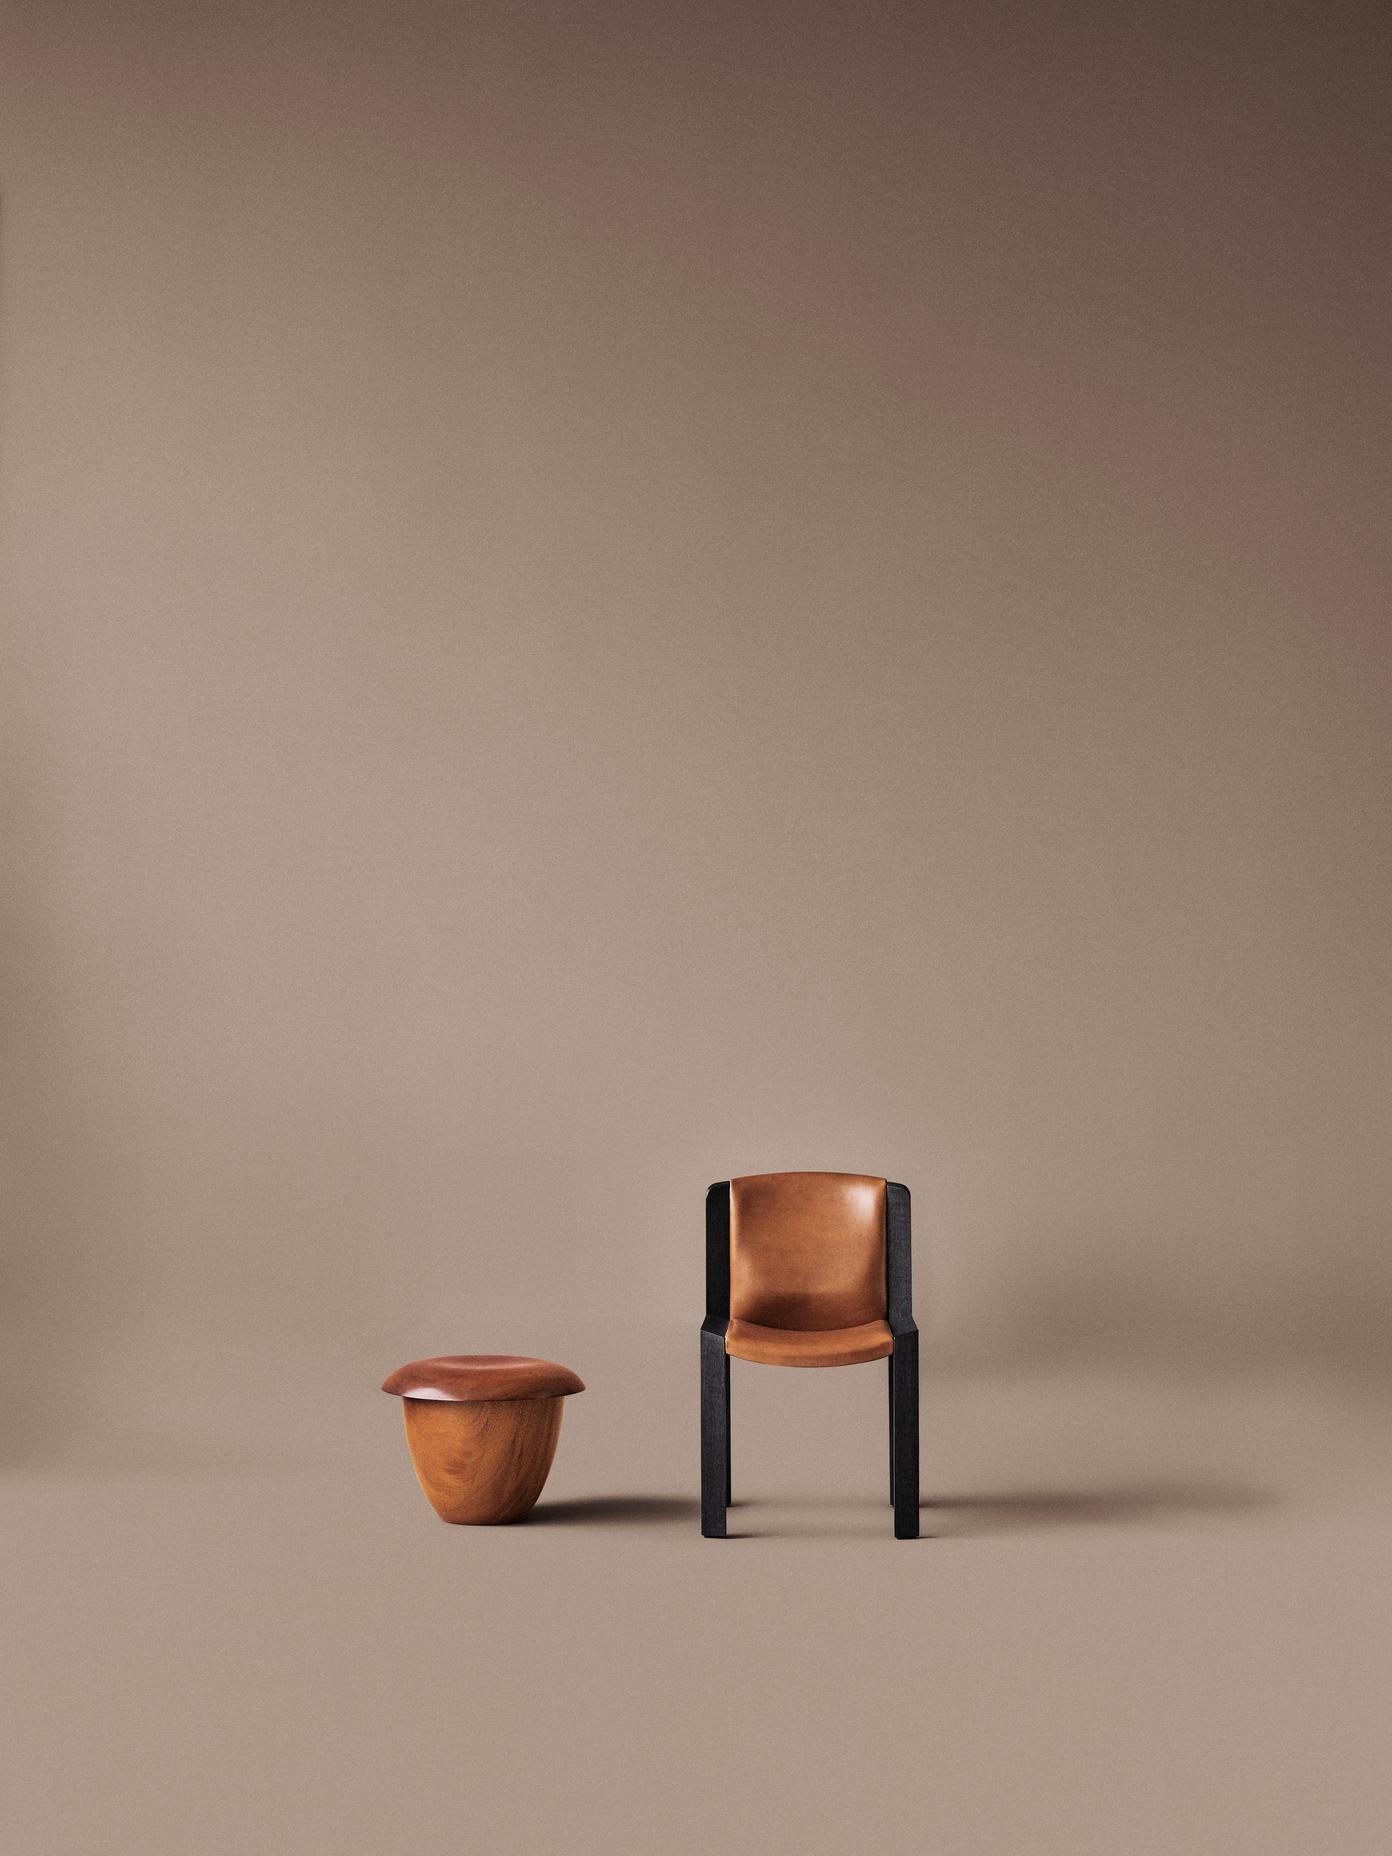 Danish Joe Colombo 'Chair 300' Wood and Sørensen Leather by Karakter